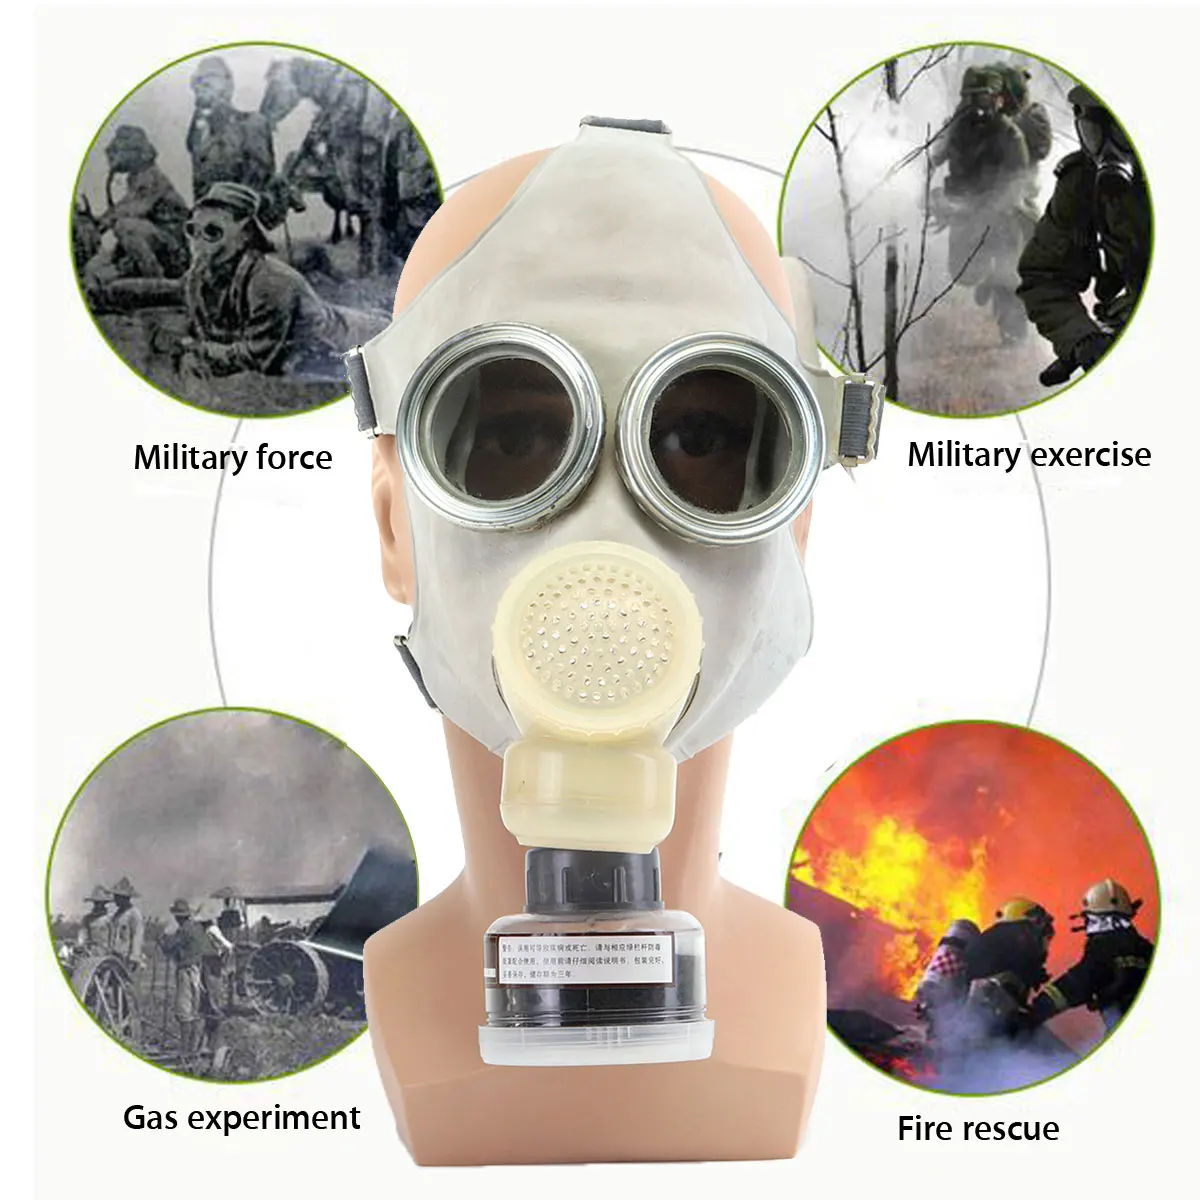 Chemcial живопись распыление противогаз же Военная армейская пыль дымовая фильтеротективная Safurance портативная противогаз промышленная безопасность